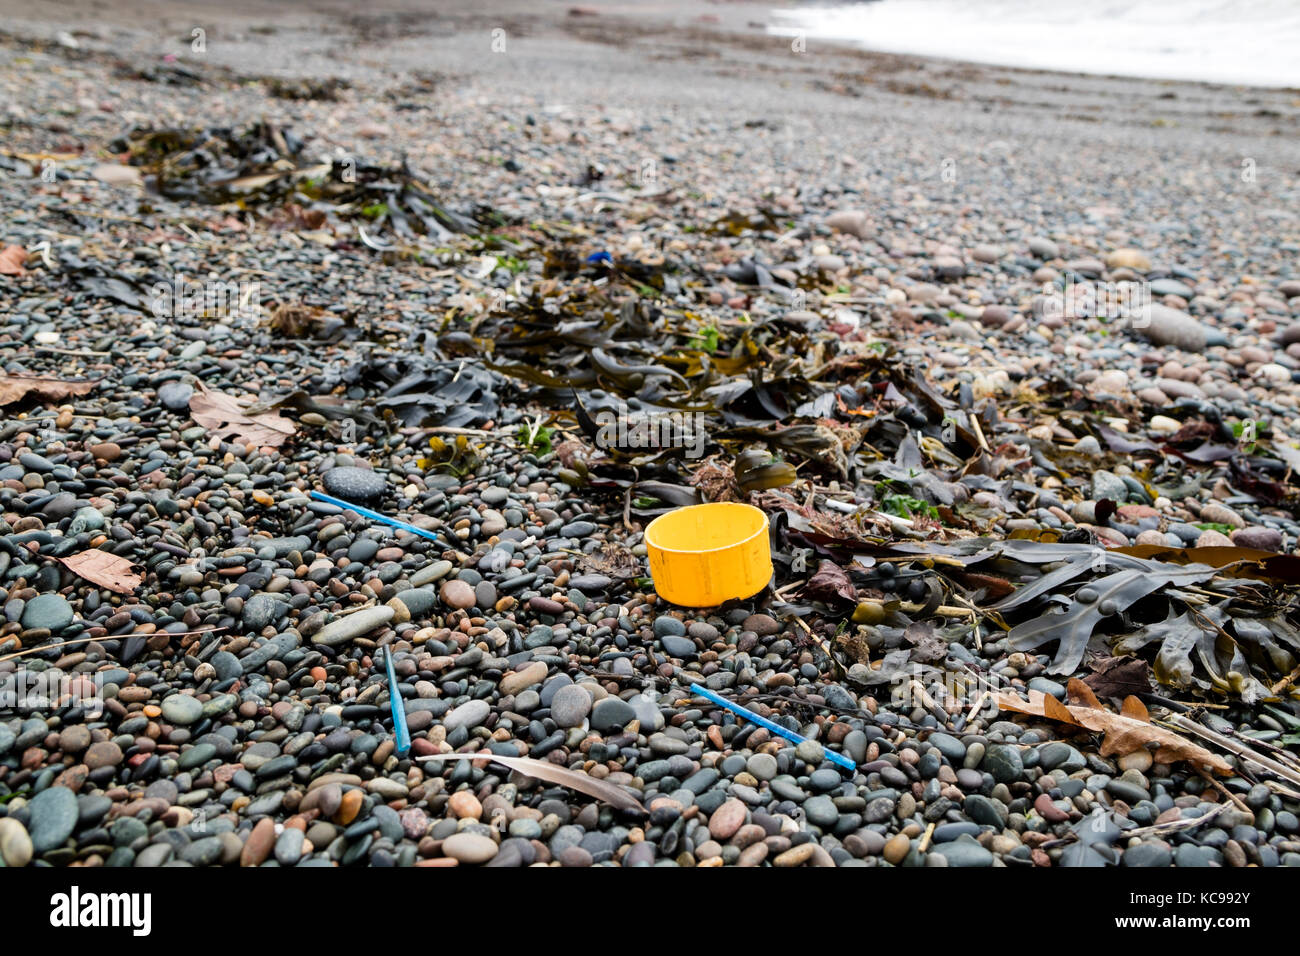 La basura de plástico arrastrados hasta la playa de Bahía Fleswick cerca de St Bees, Cumbria, Reino Unido Foto de stock